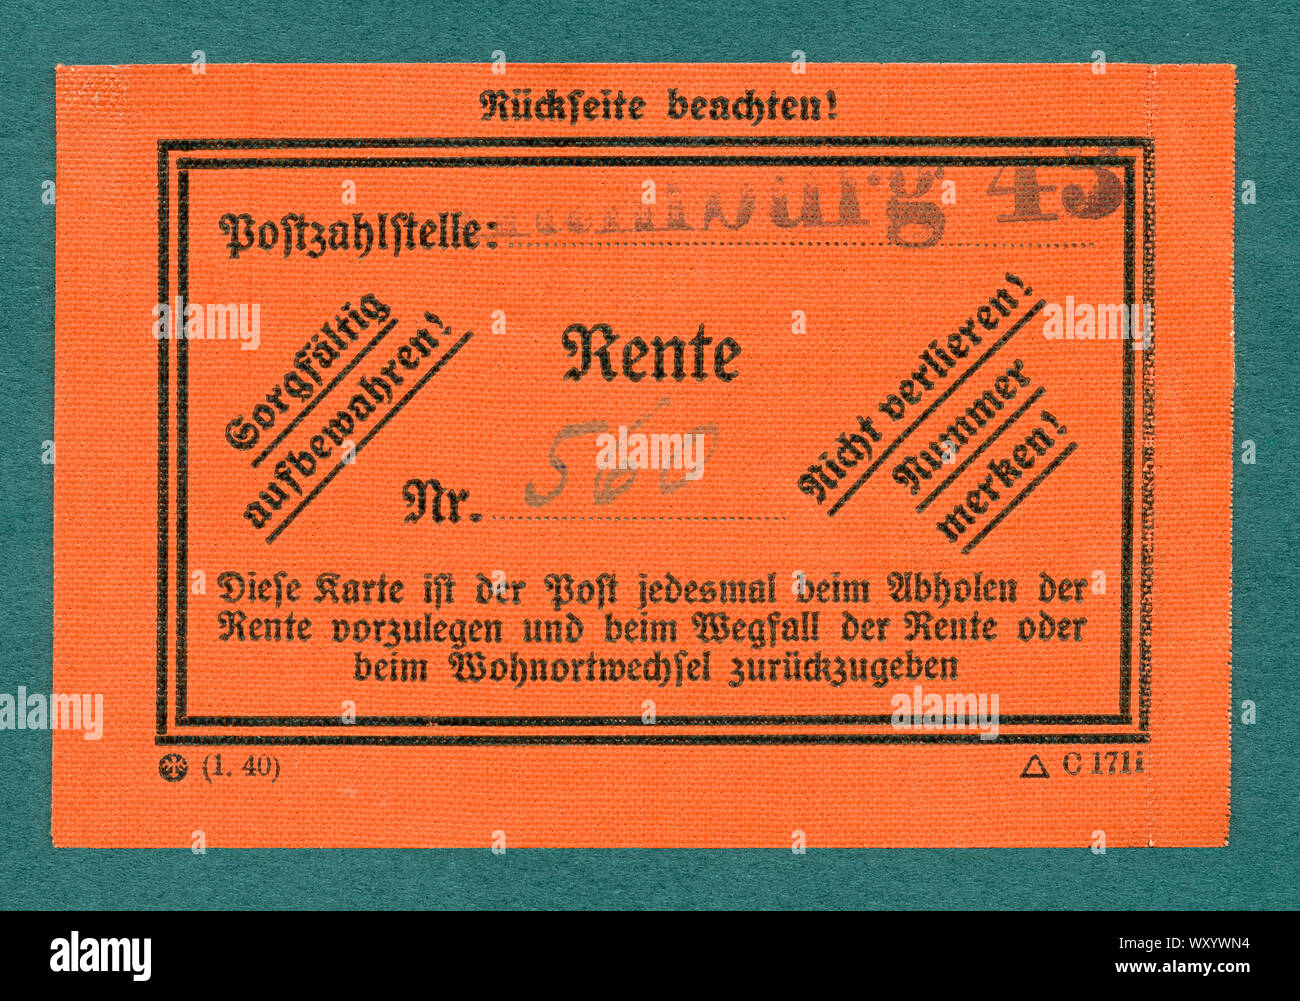 Europa, Deutschland, Hamburgo, Drittes Reich der Ausweiskarte Postzahlstelle für die Rente, Größe 9 cm x 6 cm , um 1940 . / Europa, Alemania, Hamburgo, Tercer Reich, tarjeta de identificación para la pensión, tamaño 9 cm x 6 cm , alrededor de 1940 Foto de stock